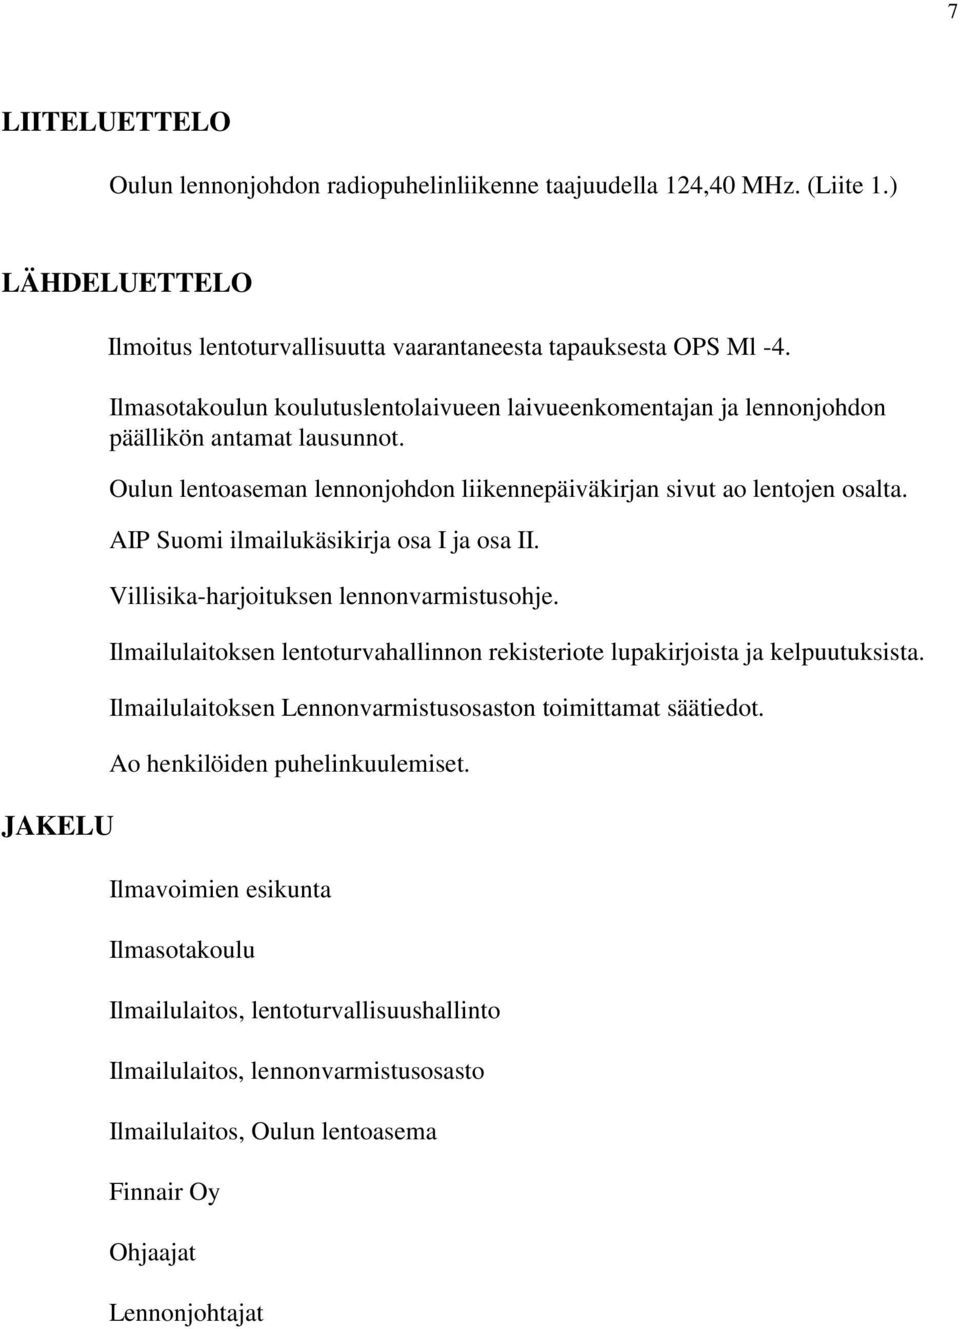 AIP Suomi ilmailukäsikirja osa I ja osa II. Villisika-harjoituksen lennonvarmistusohje. Ilmailulaitoksen lentoturvahallinnon rekisteriote lupakirjoista ja kelpuutuksista.